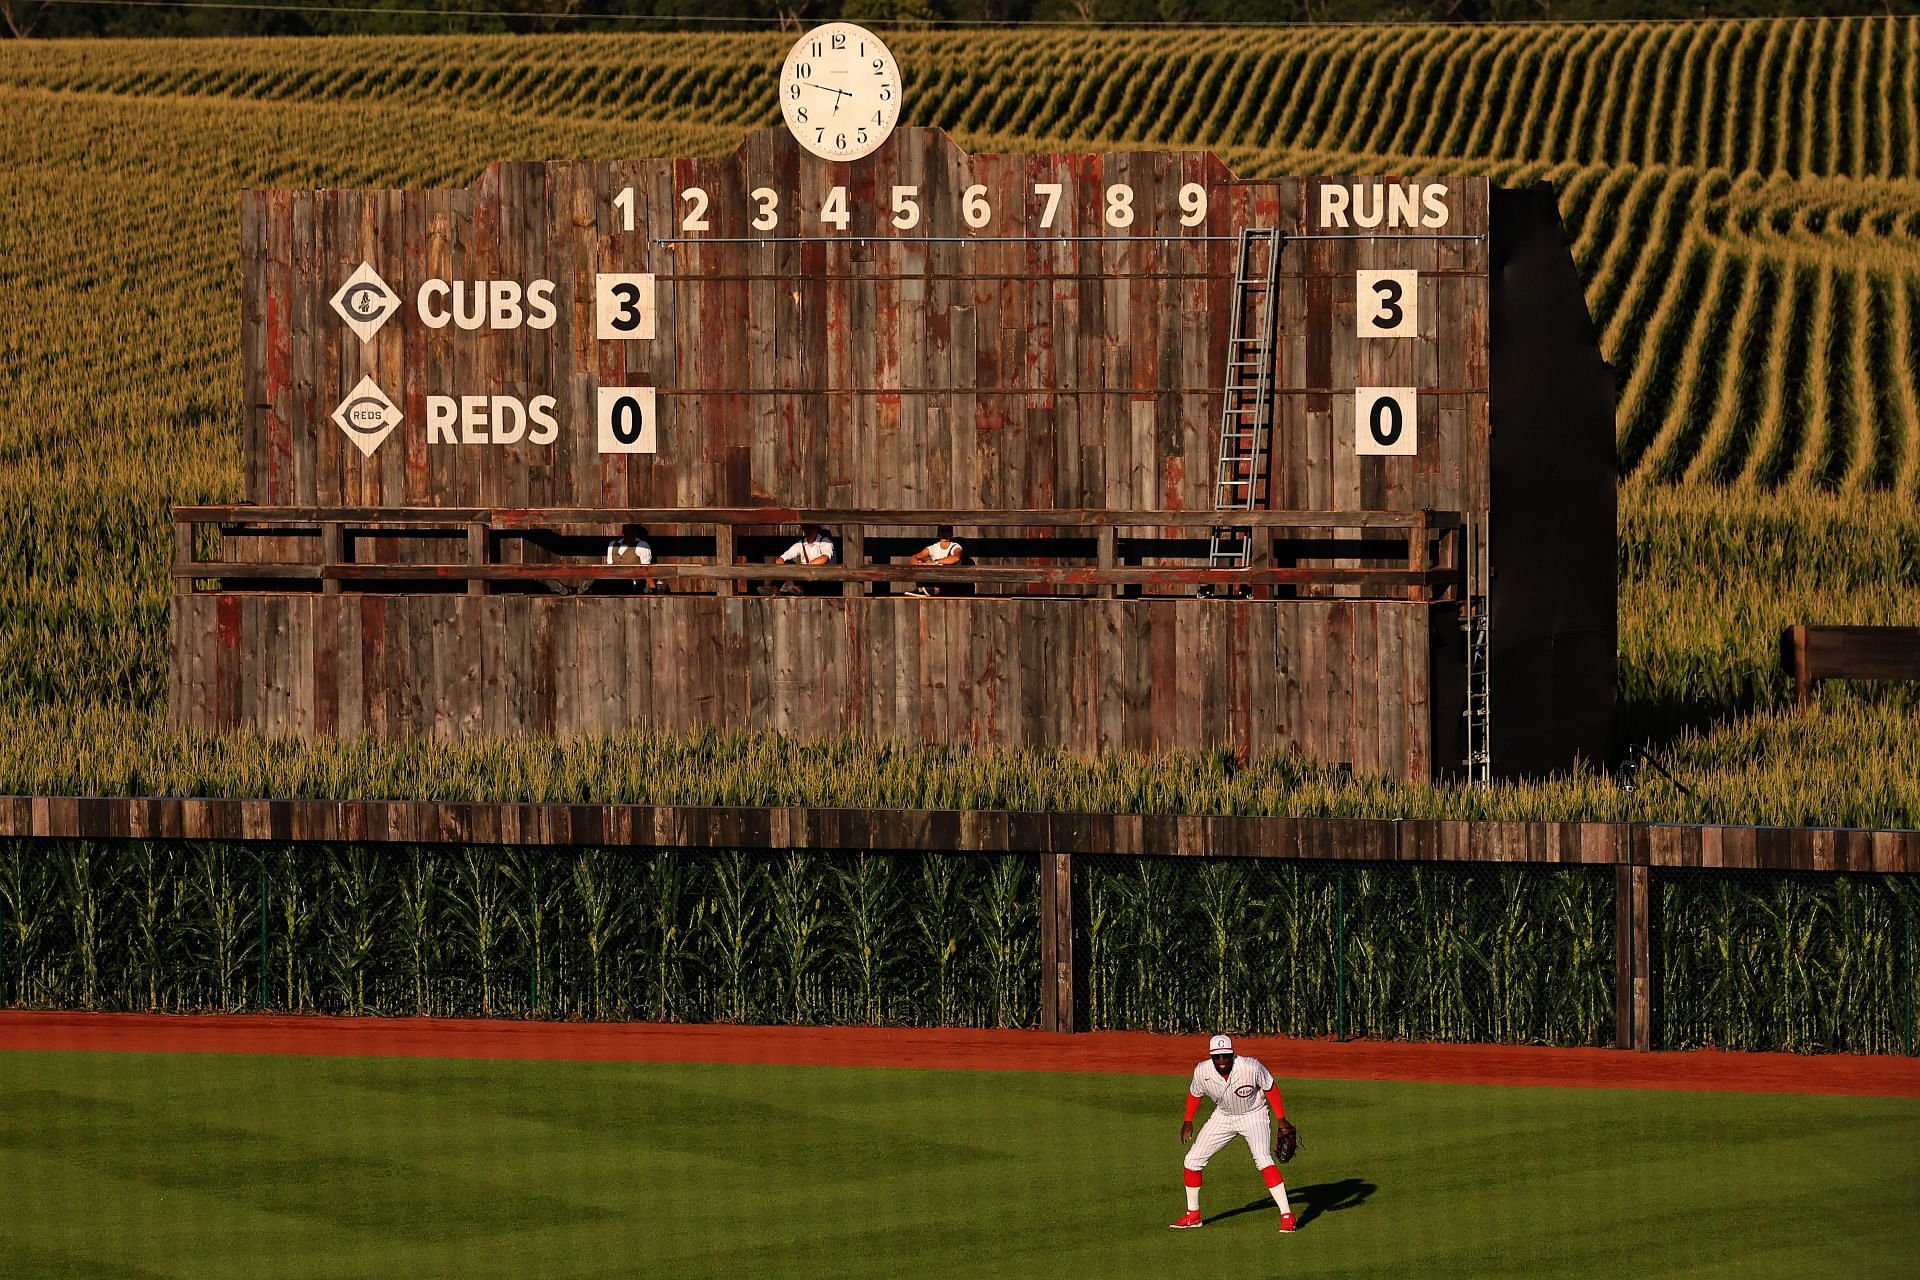 MLB at Field of Dreams: Chicago Cubs v Cincinnati Reds